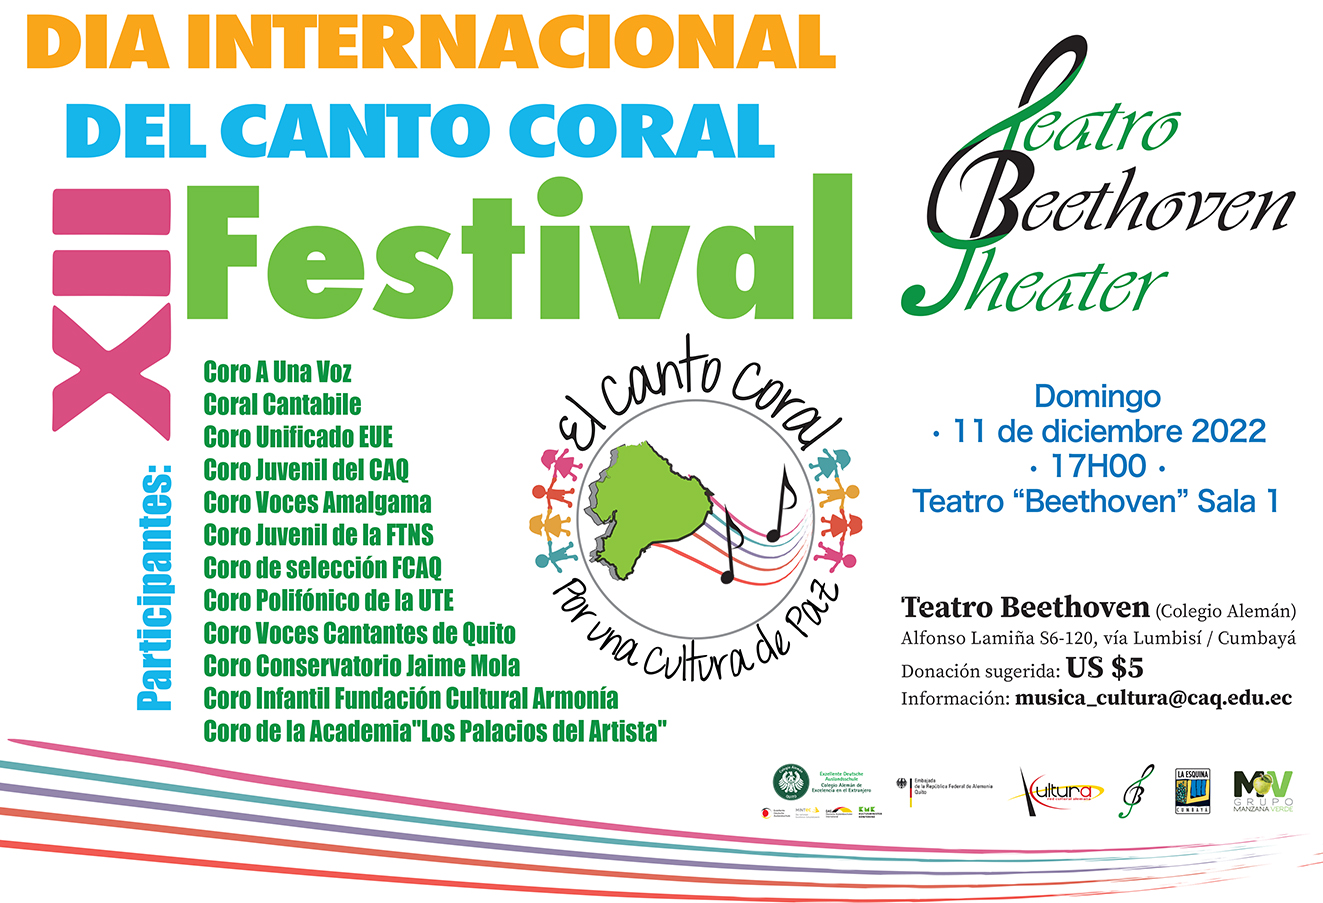 Domingo 11 de diciembre 2022 17h00: XII Festival por el día Internacional del Canto Coral